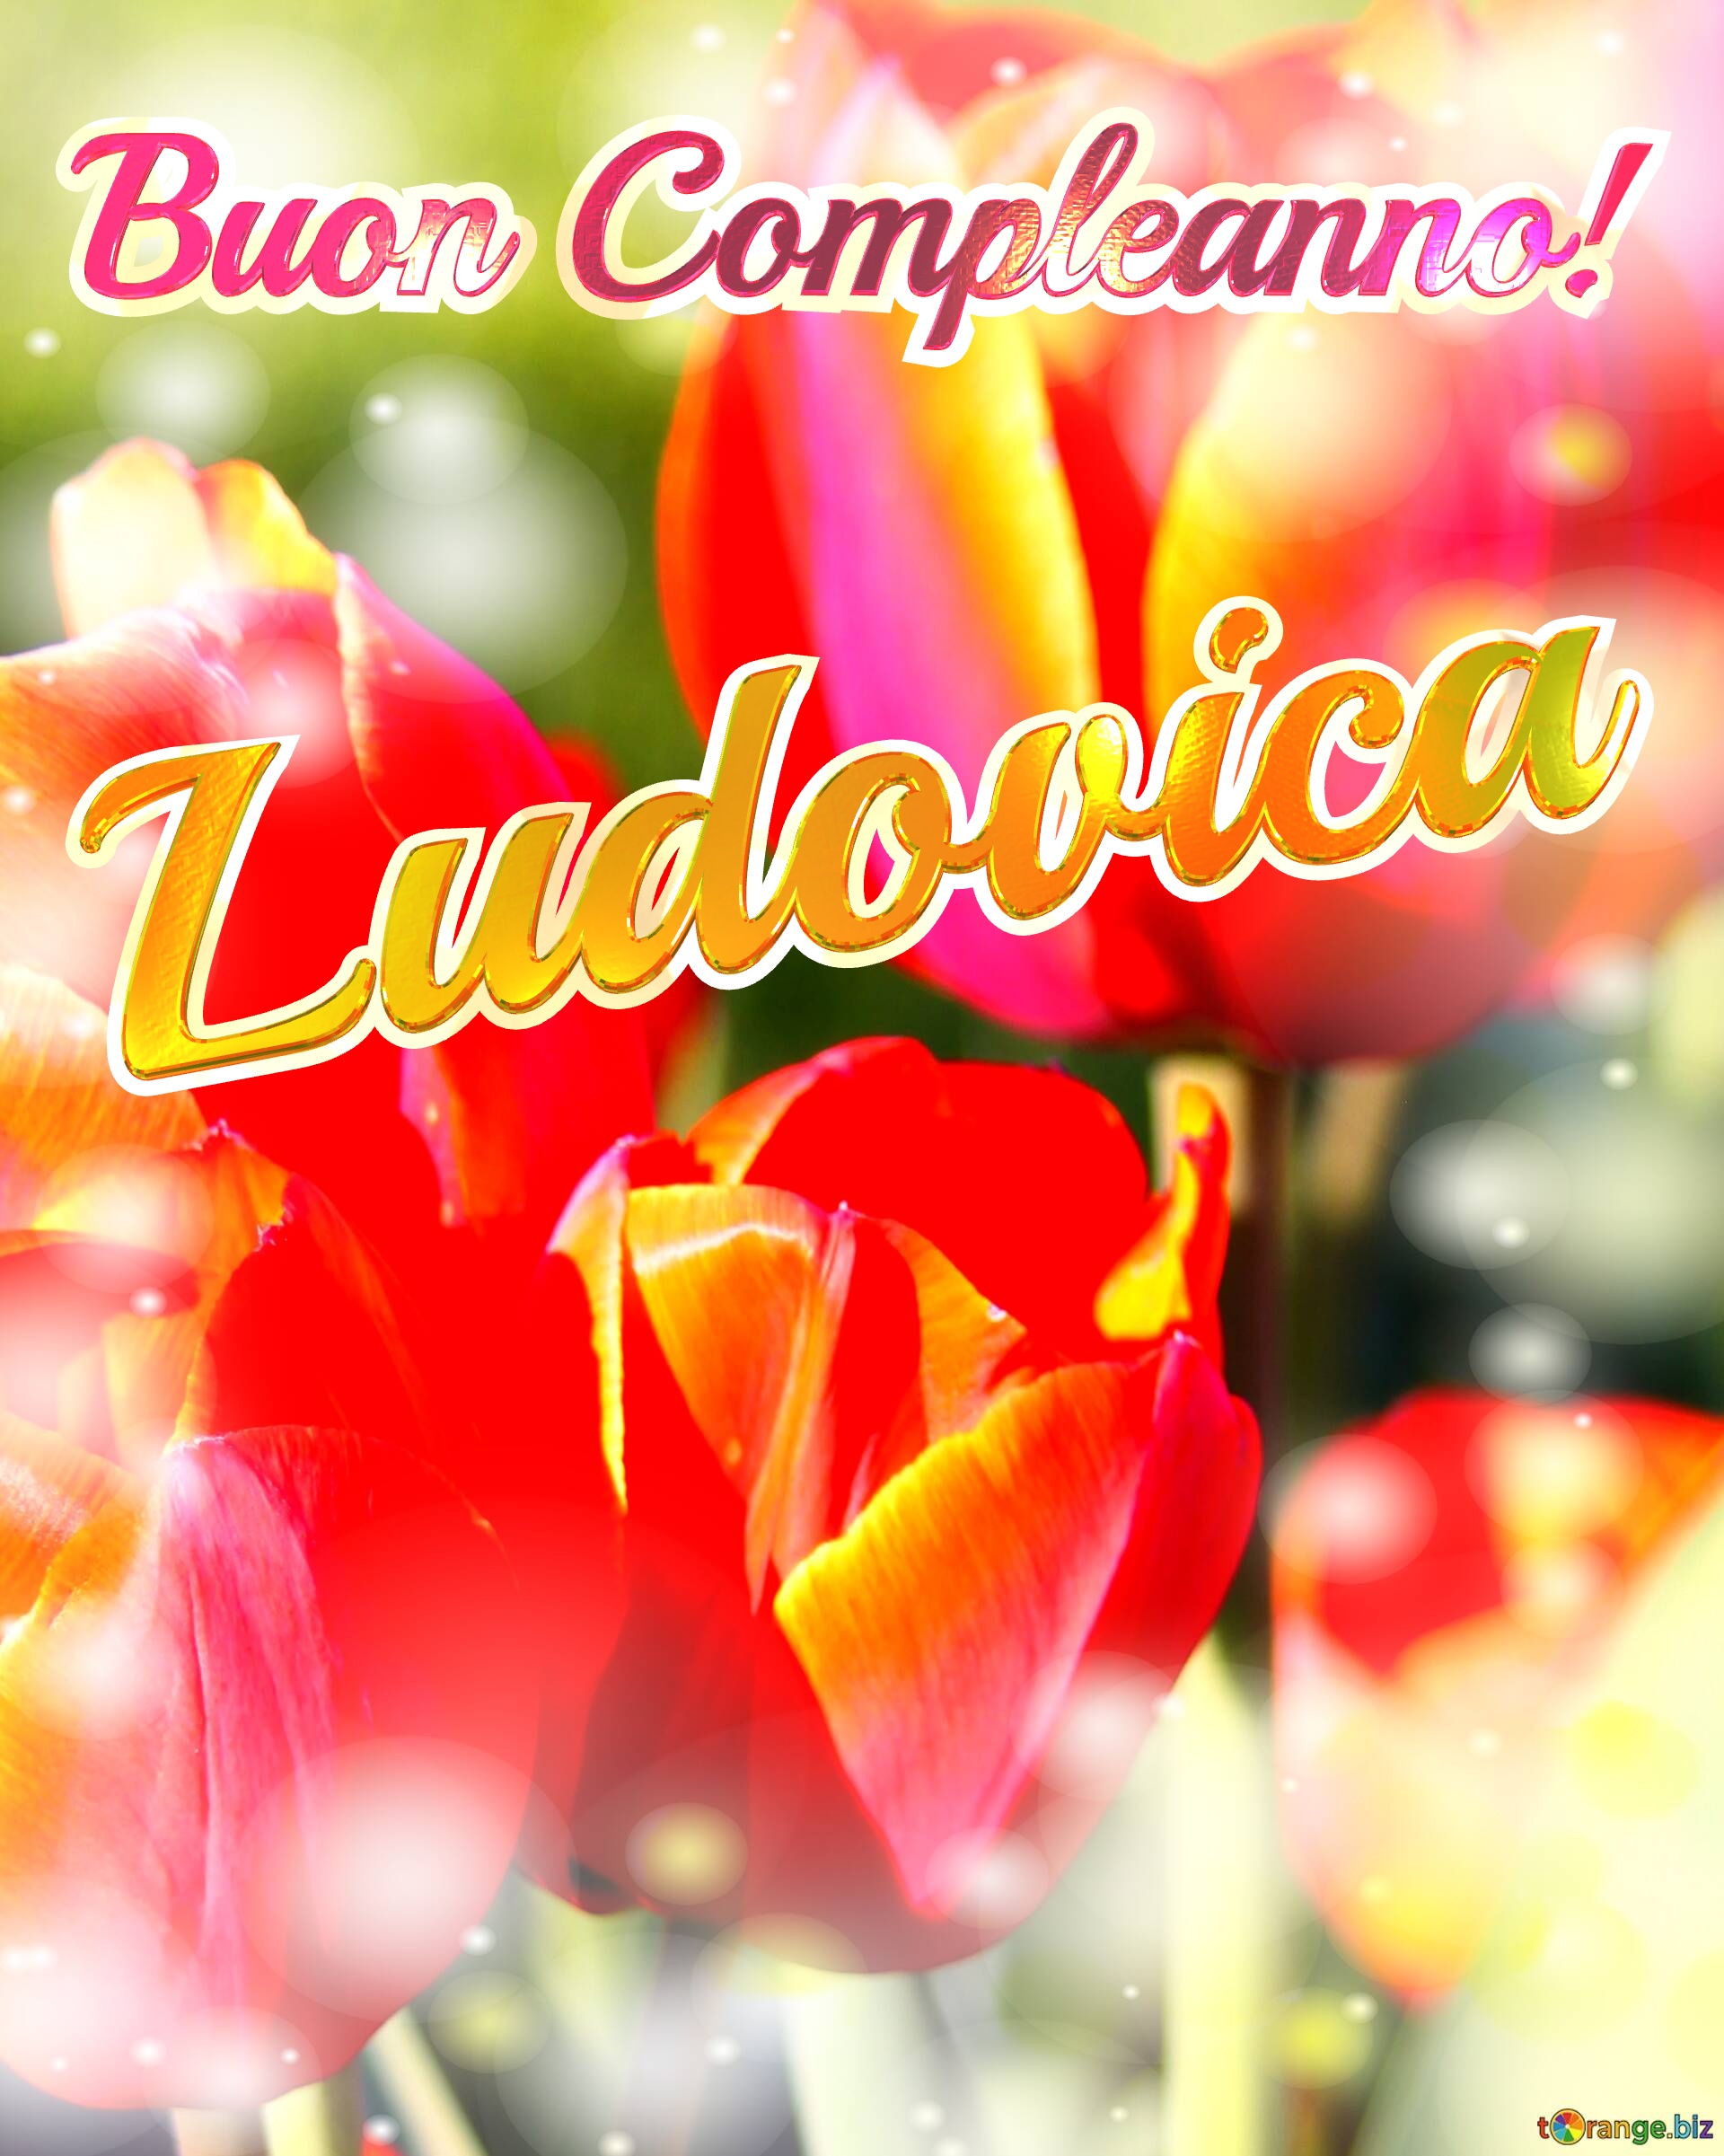 Buon Compleanno! Ludovica  La bellezza dei tulipani è un richiamo alla bellezza della vita, auguri per una vita piena di bellezza e soddisfazione. №0